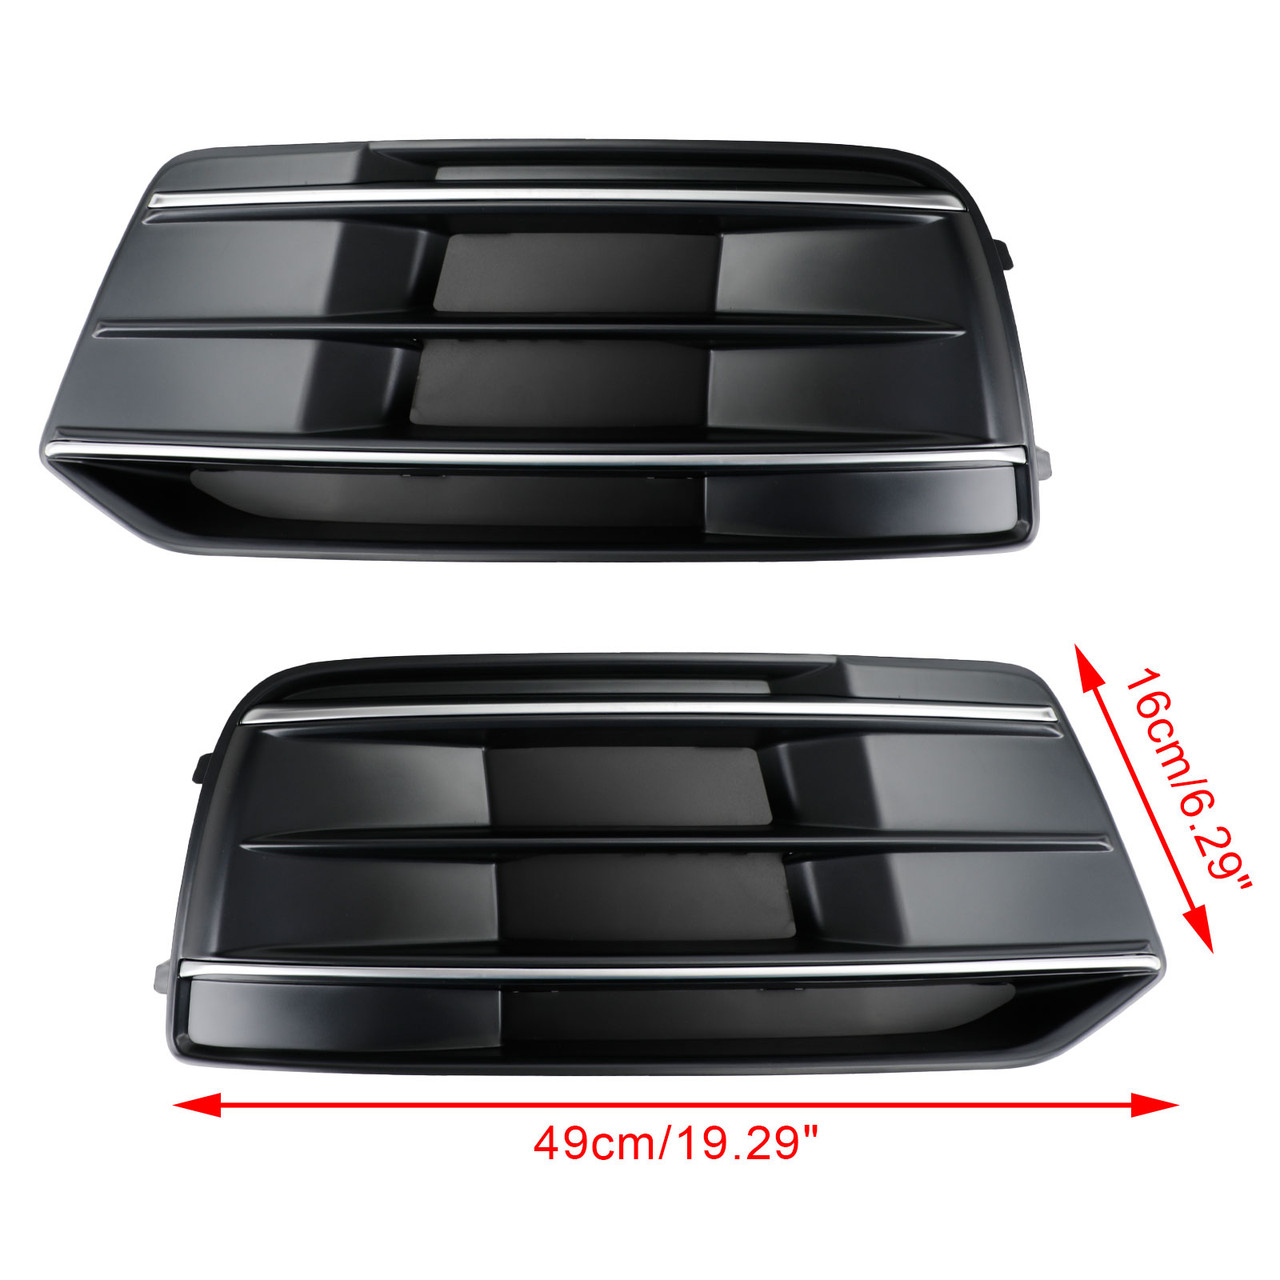 2PCS 18-22 Audi Q5 Front Bumper Cover Grille Bezel Insert 80A807679D Black/Chrome